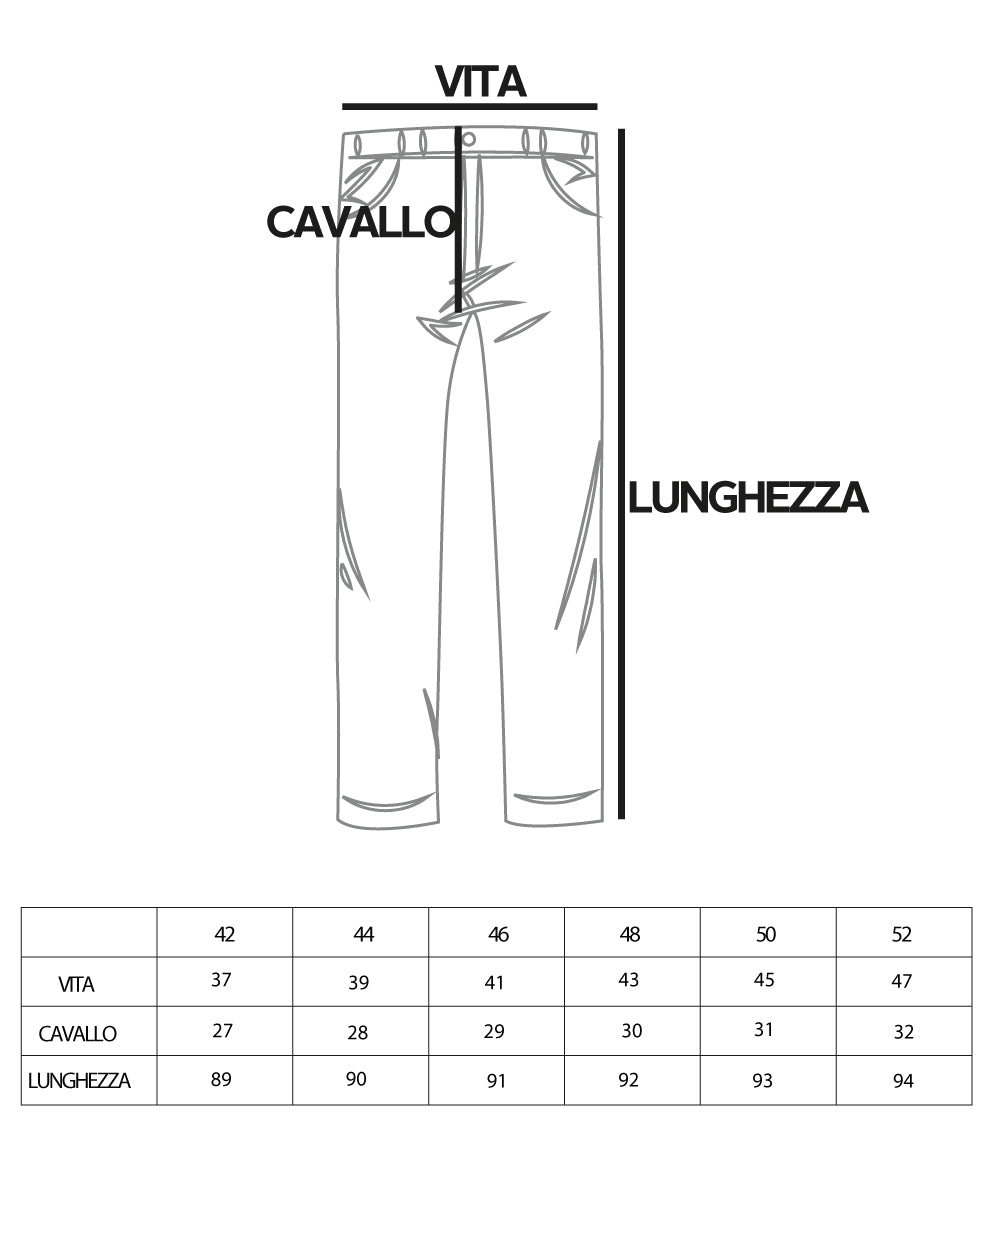 Pantaloni Uomo Tasca America Abbottonatura Allungata Classico Casual Nero GIOSAL-P5152A